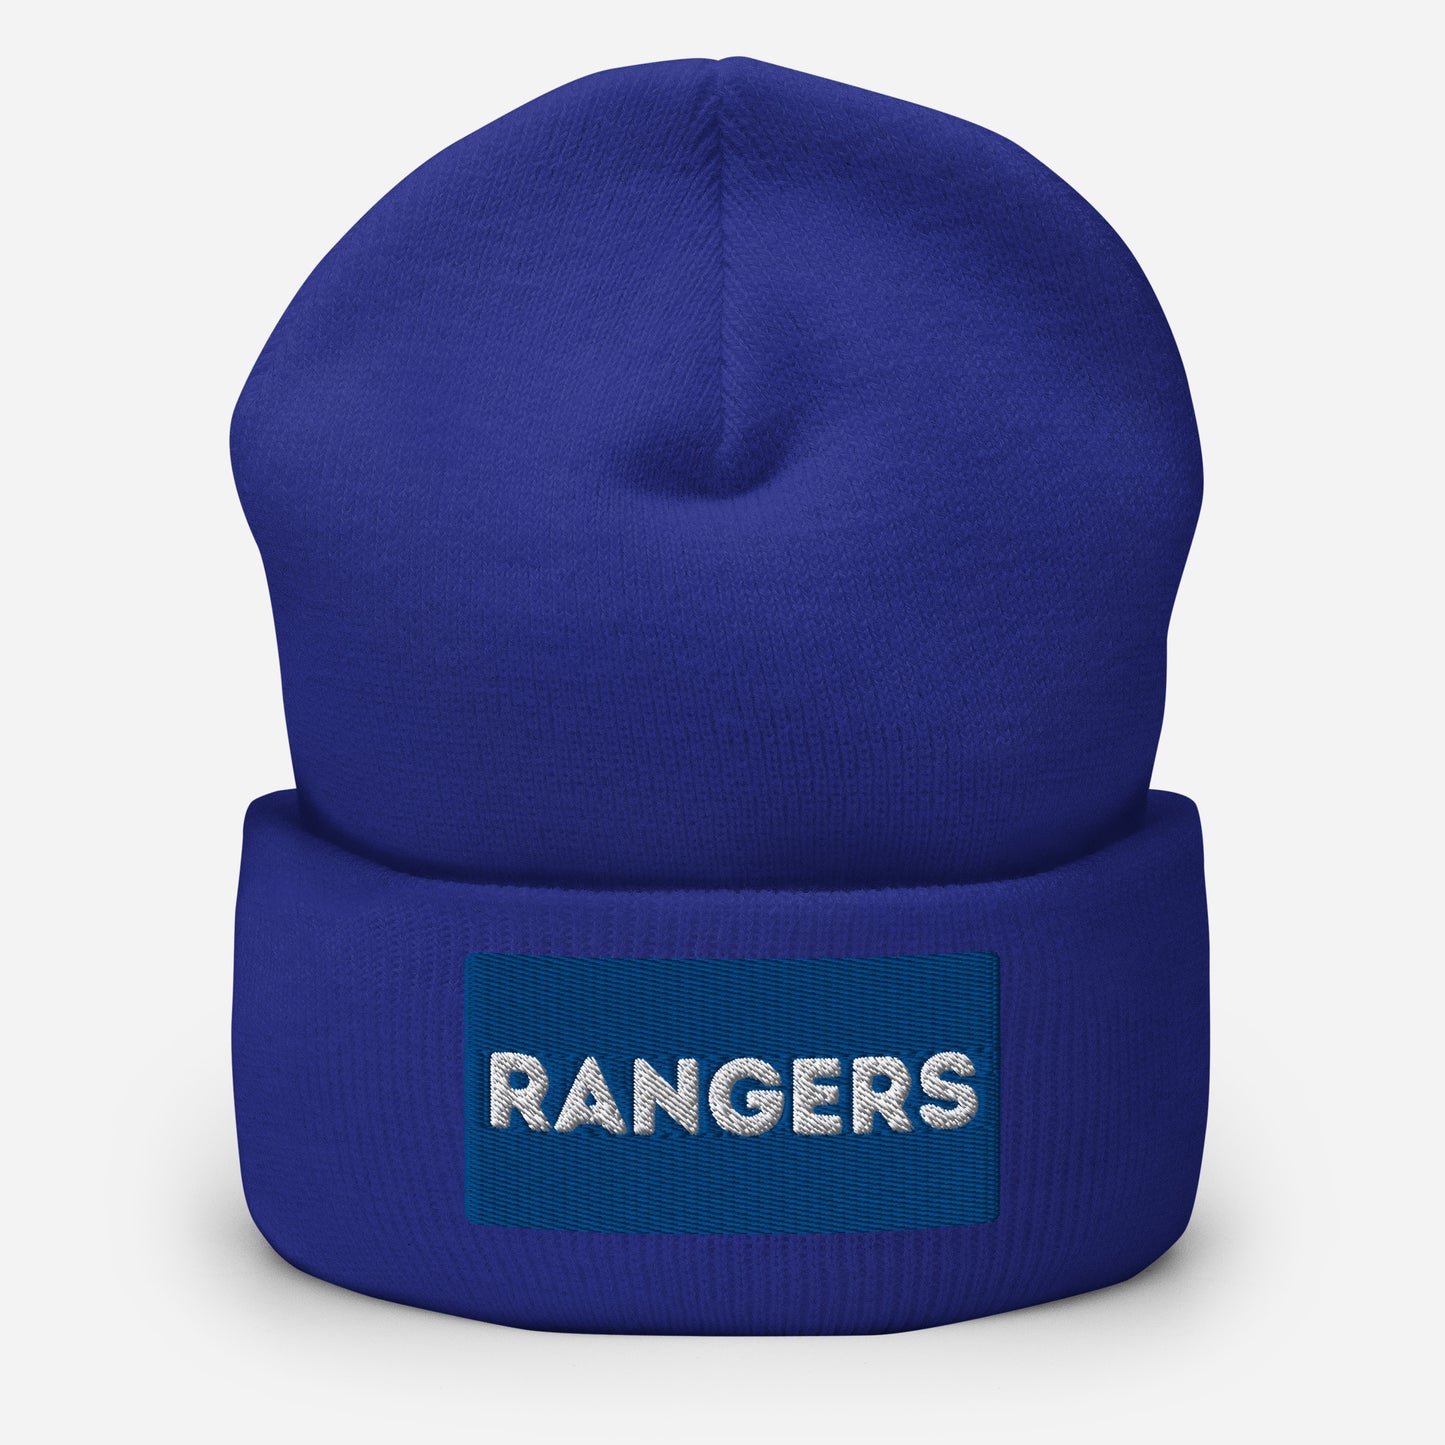 Rangers Cuffed Beanie Hat